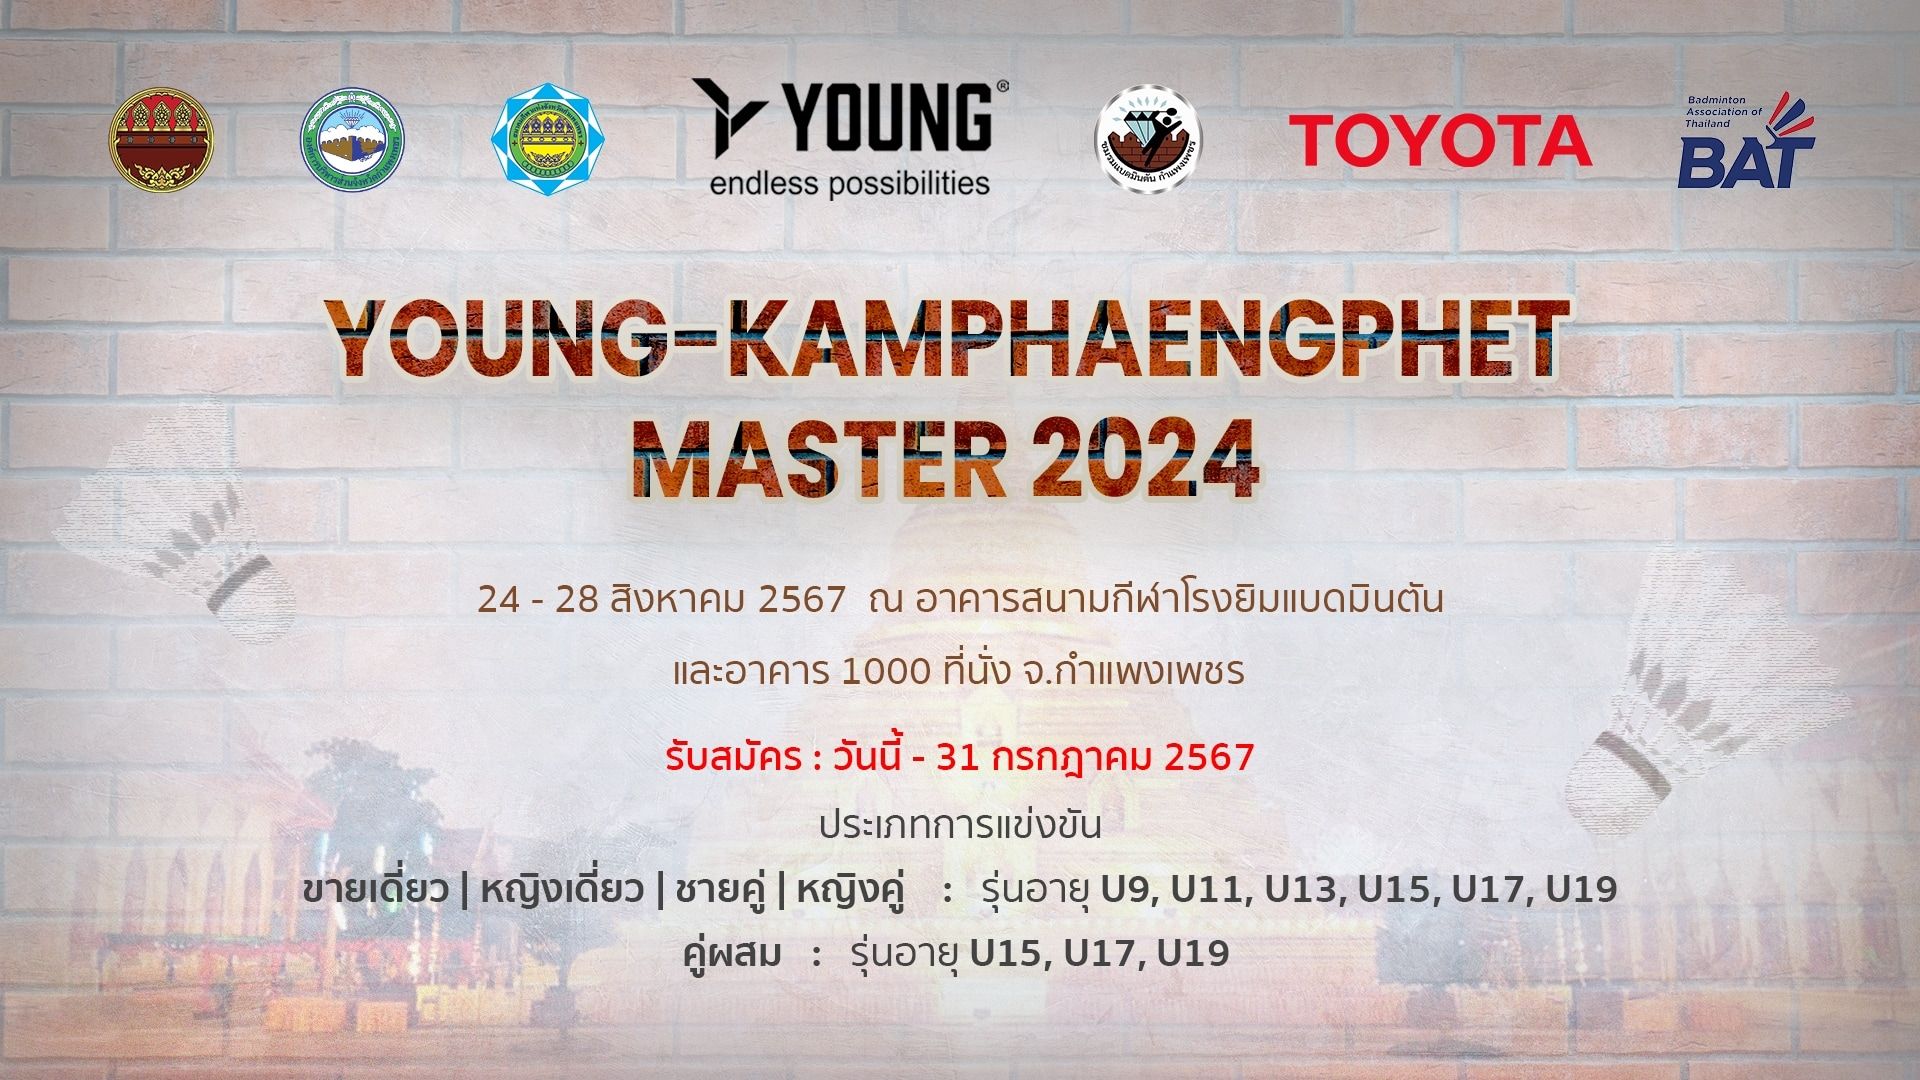 Young Kamphaengphet Master 2024